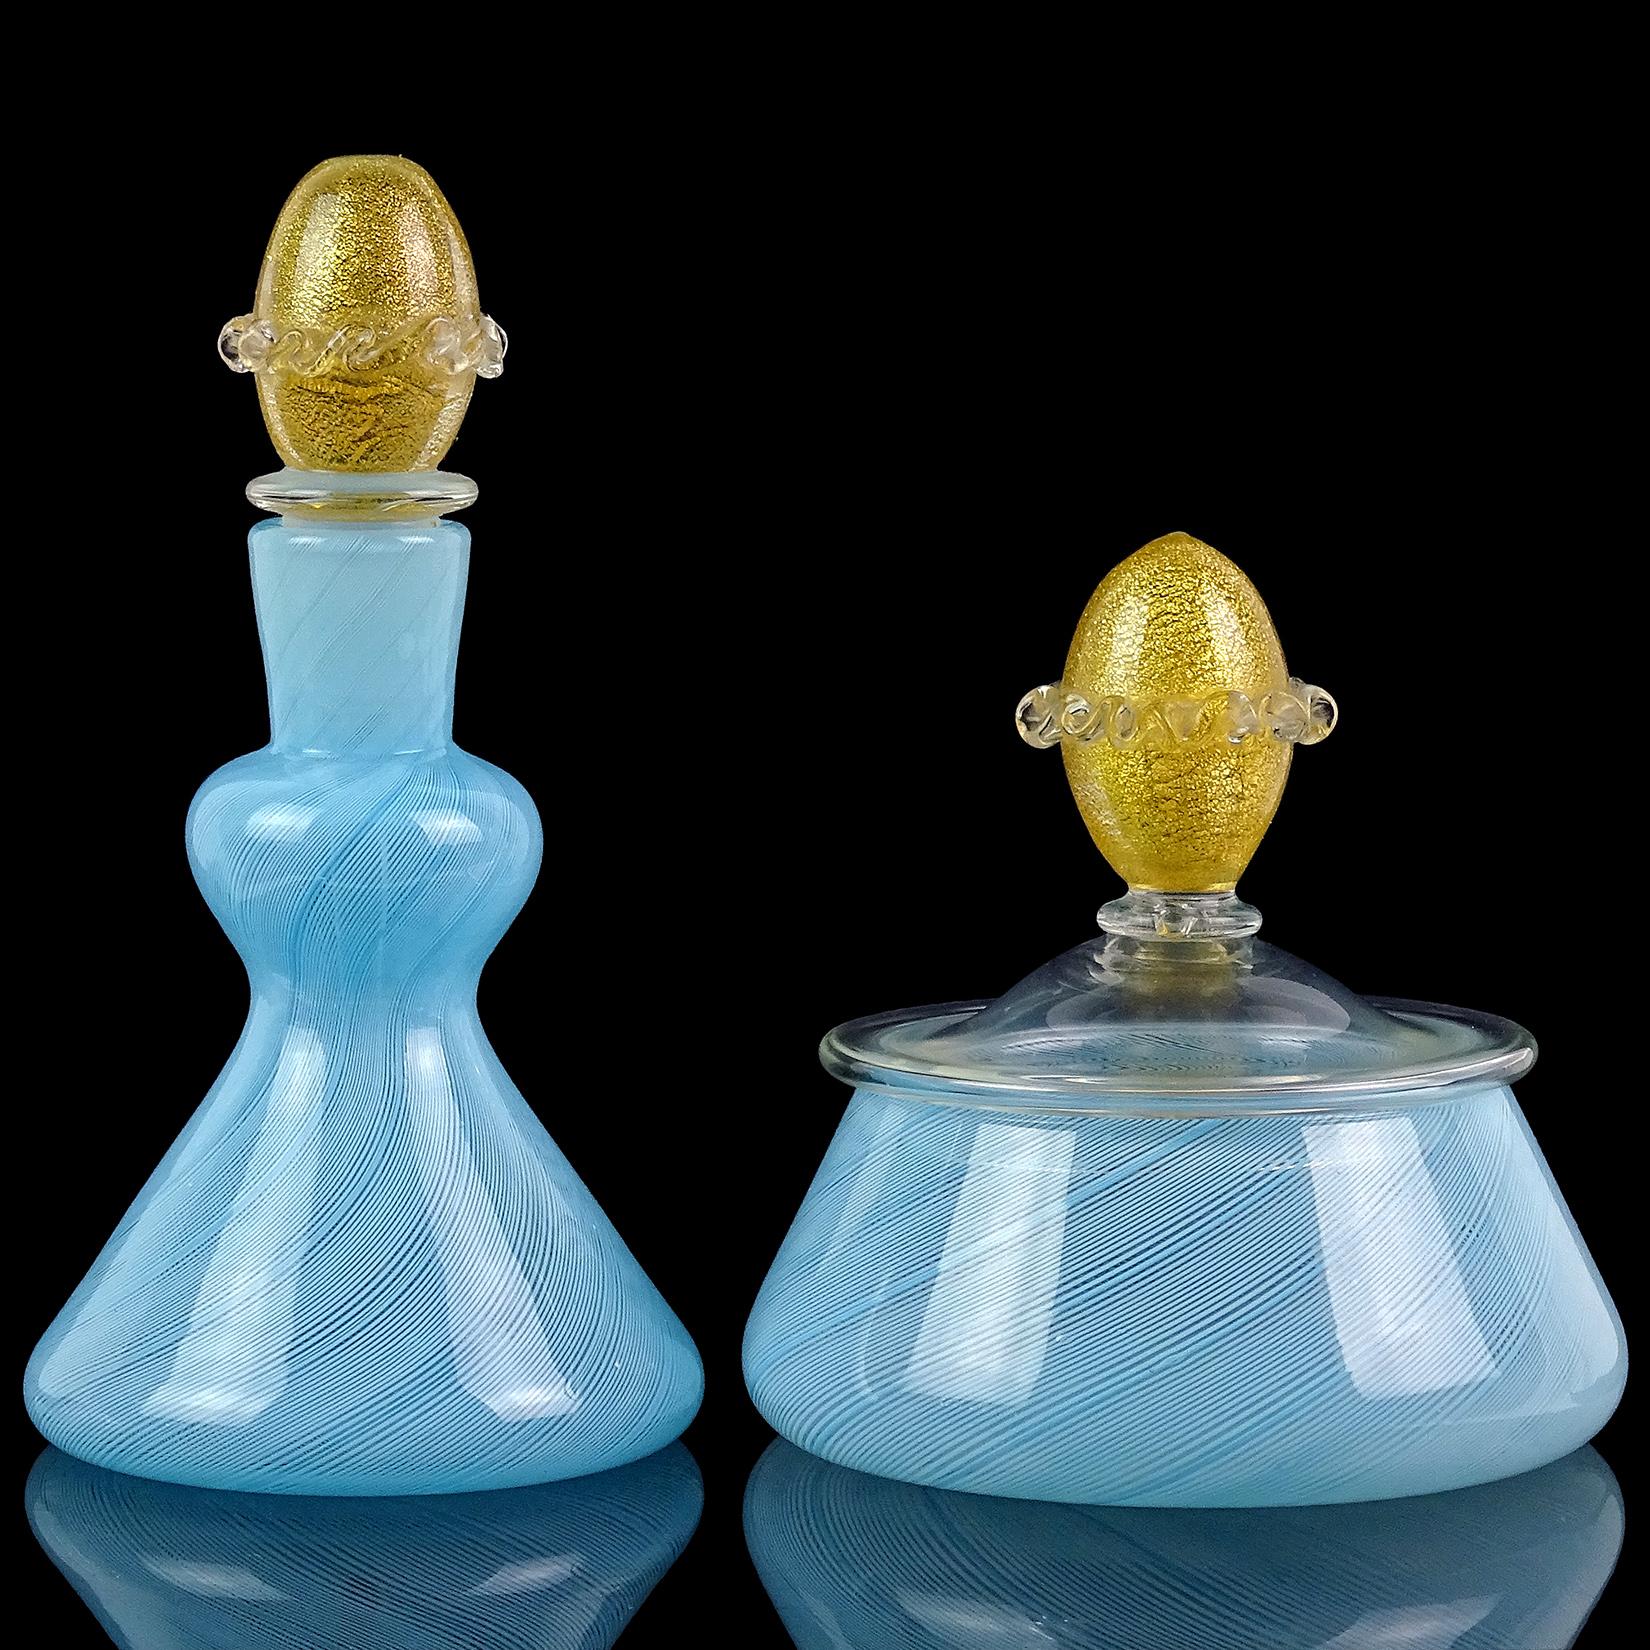 Schöne Vintage-Set von Murano mundgeblasenen blauen Bändern und Goldflecken italienische Kunst Glas Eitelkeit gesetzt. Der Parfümflakon und das Puder-/Schmuckkästchen sind mit sehr dünnen Filigrana-Bändern in Himmelblau gefertigt. Sie haben